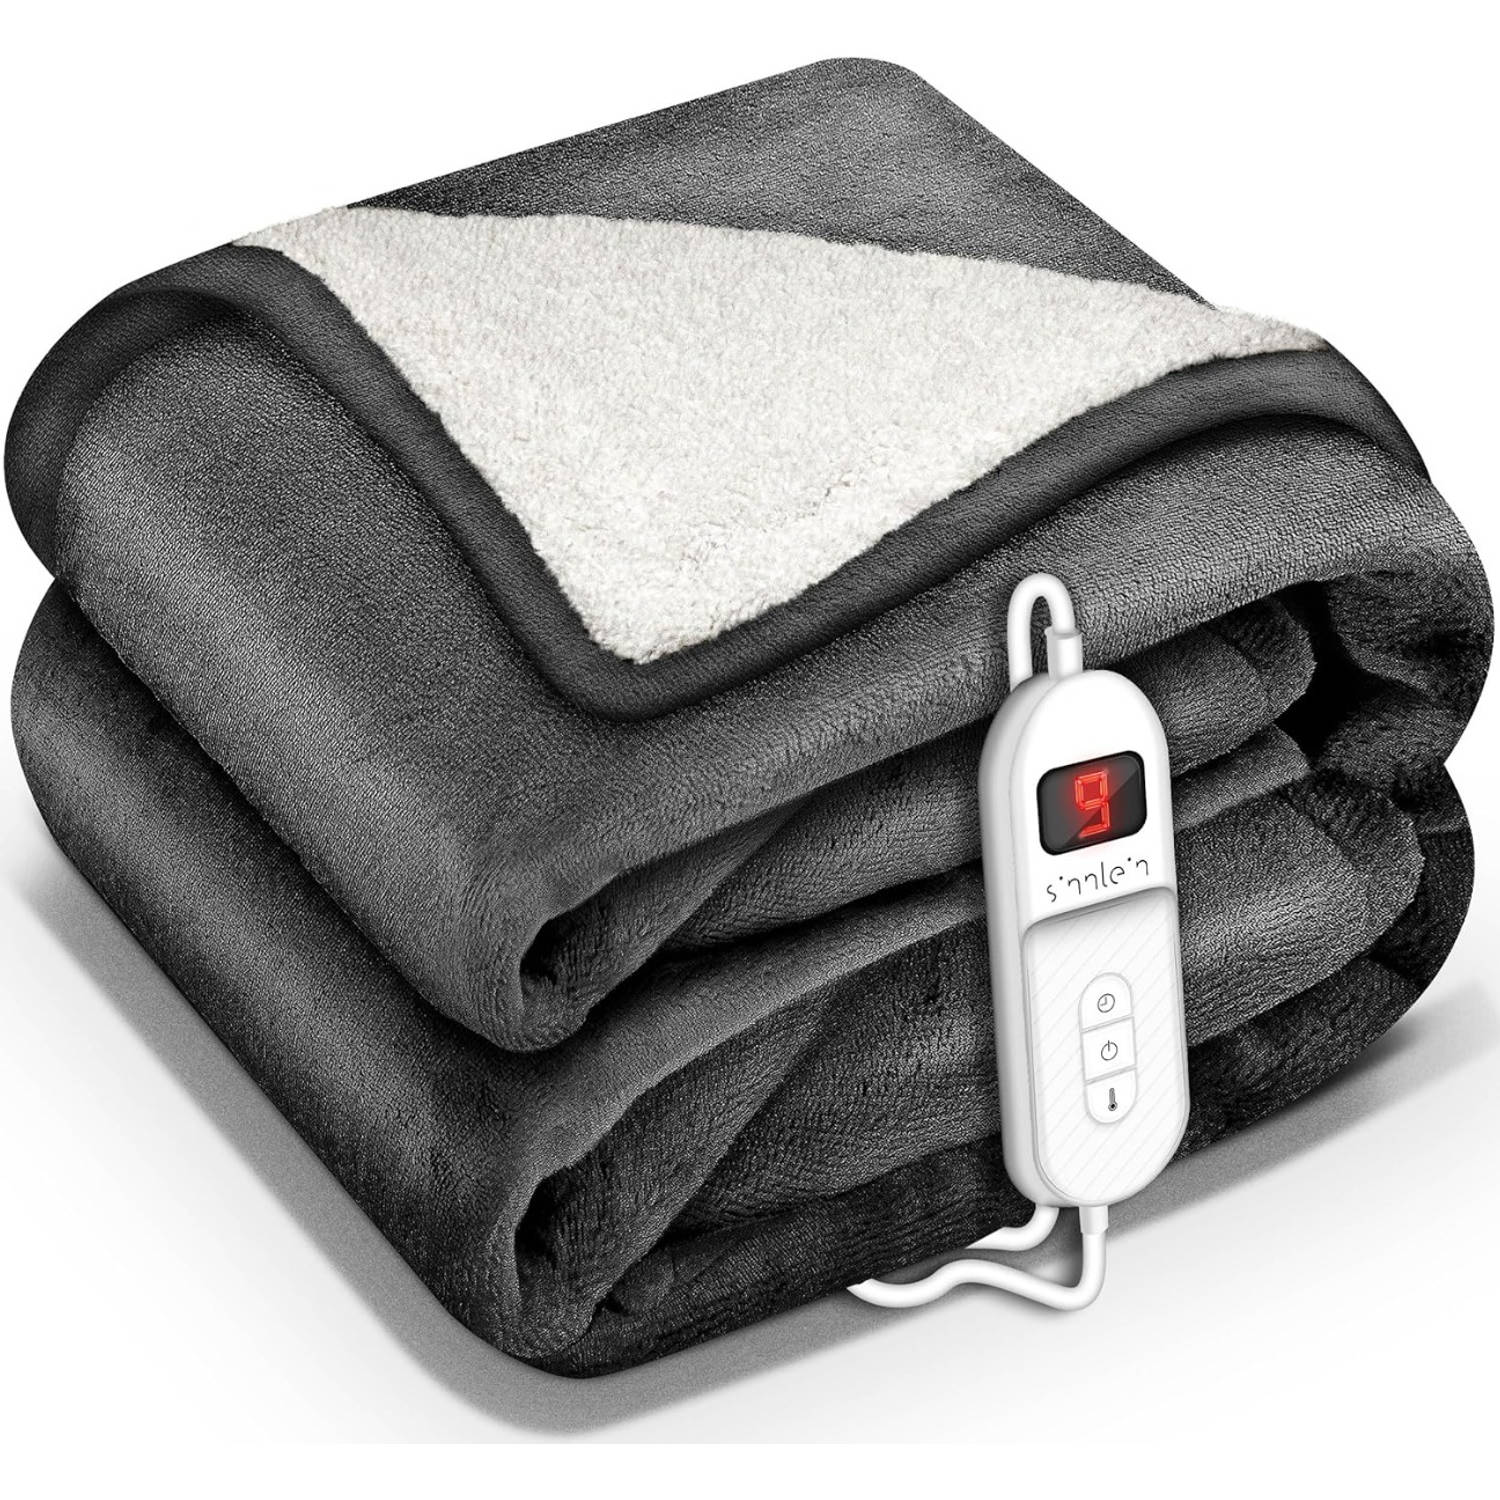 Sinnlein- Elektrische deken met automatische uitschakeling, antraciet, 160x120 cm, warmtedeken met 9